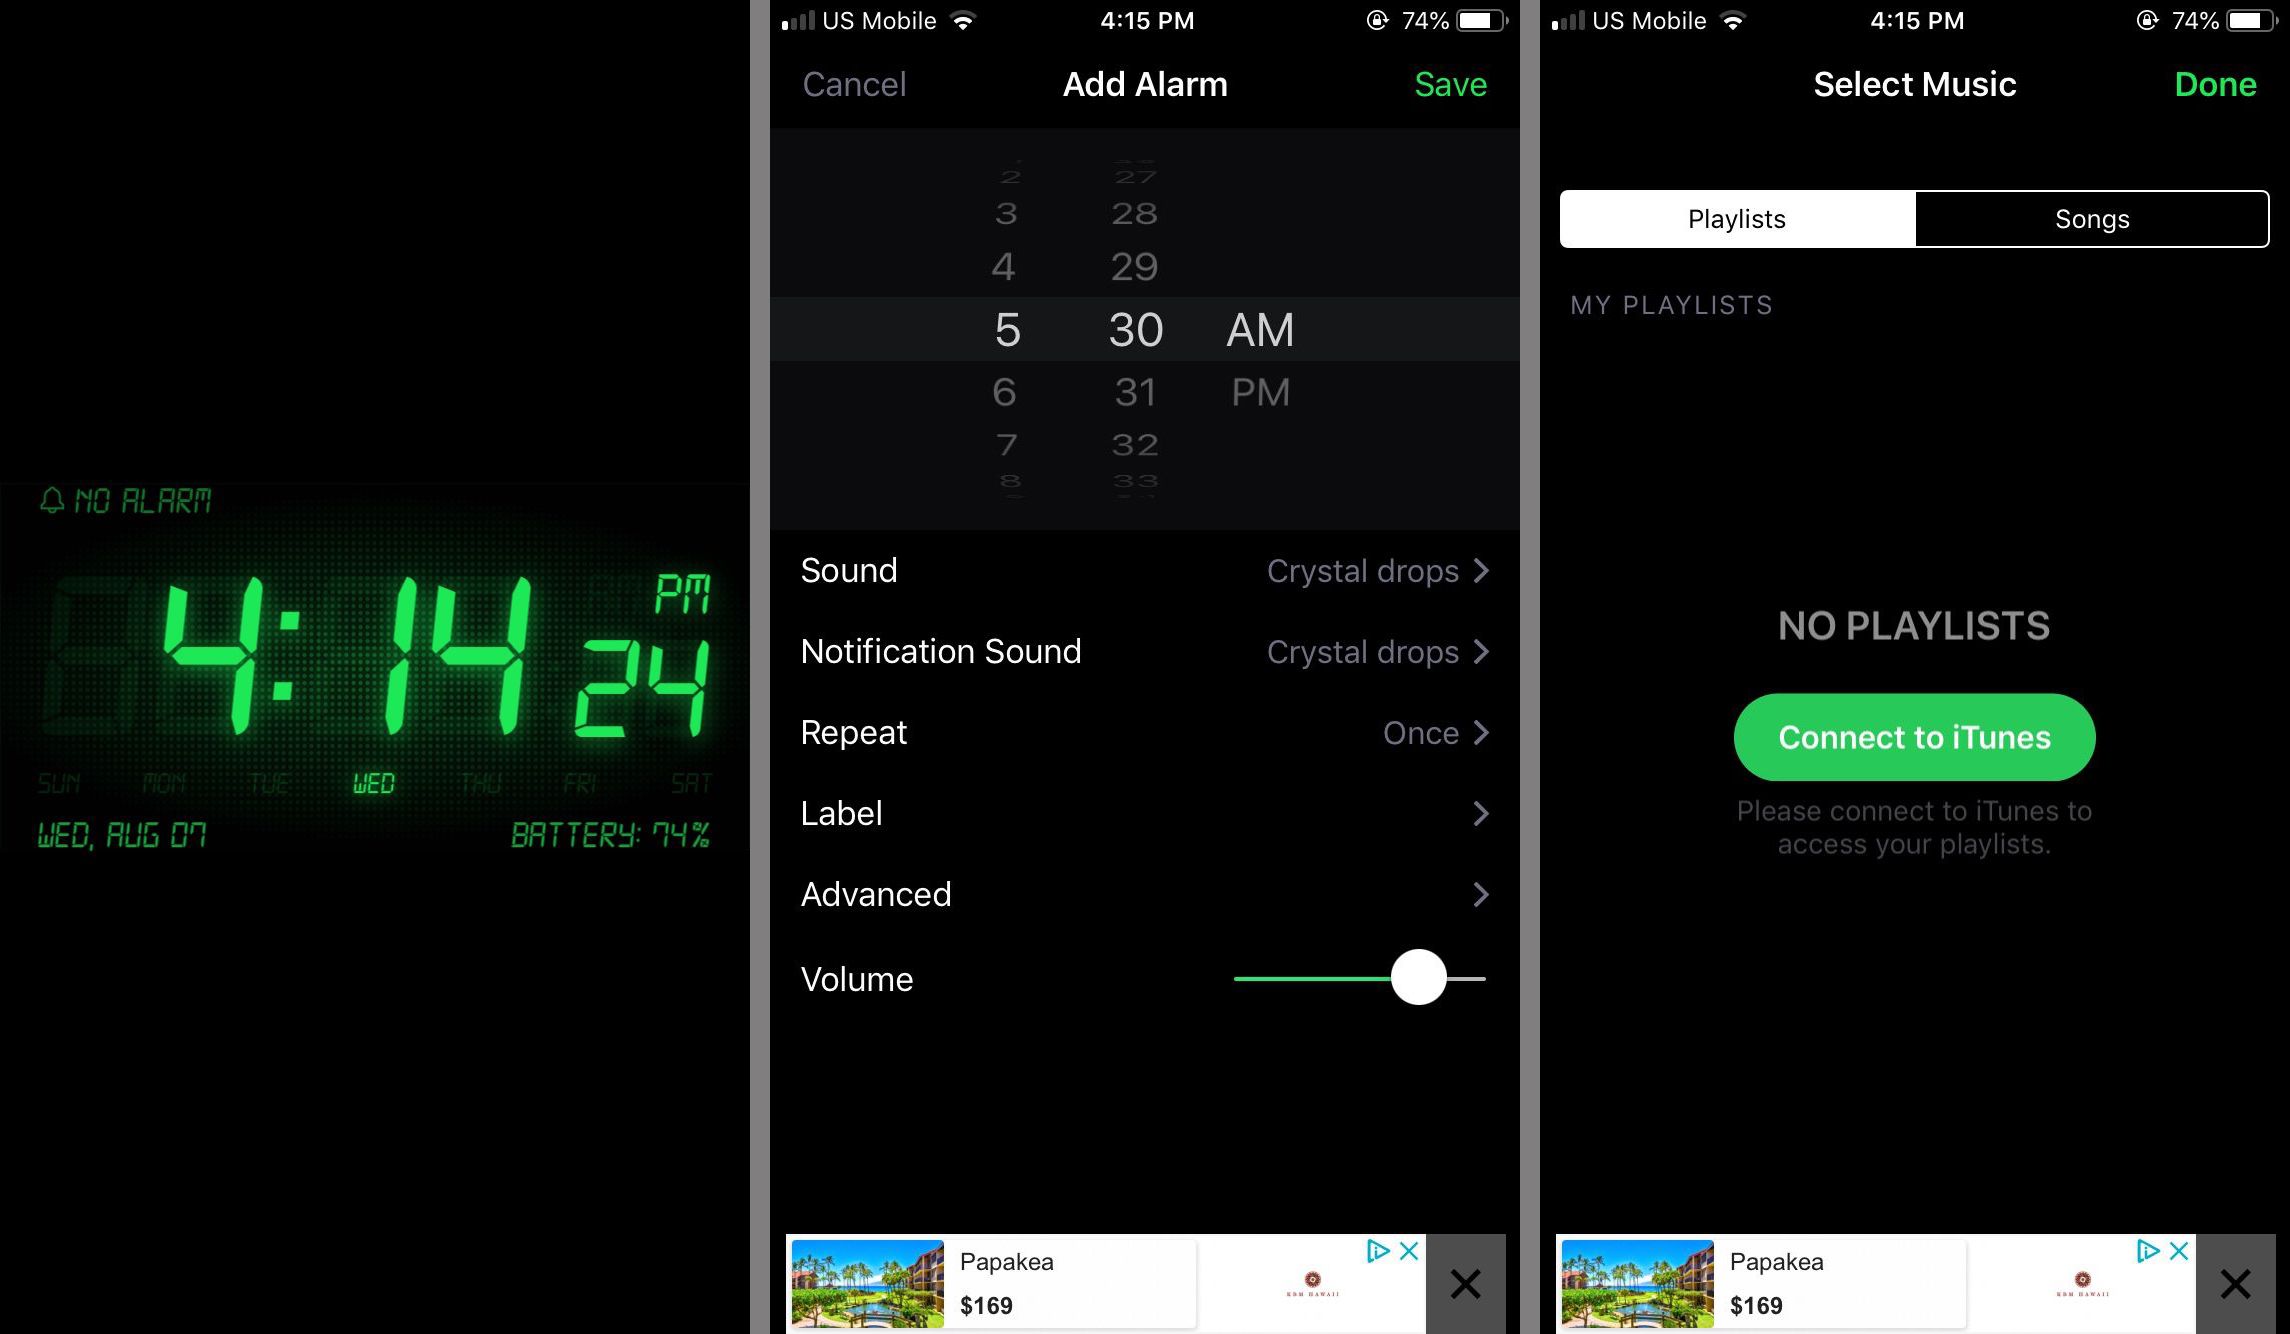 alarm clock app for mac free download